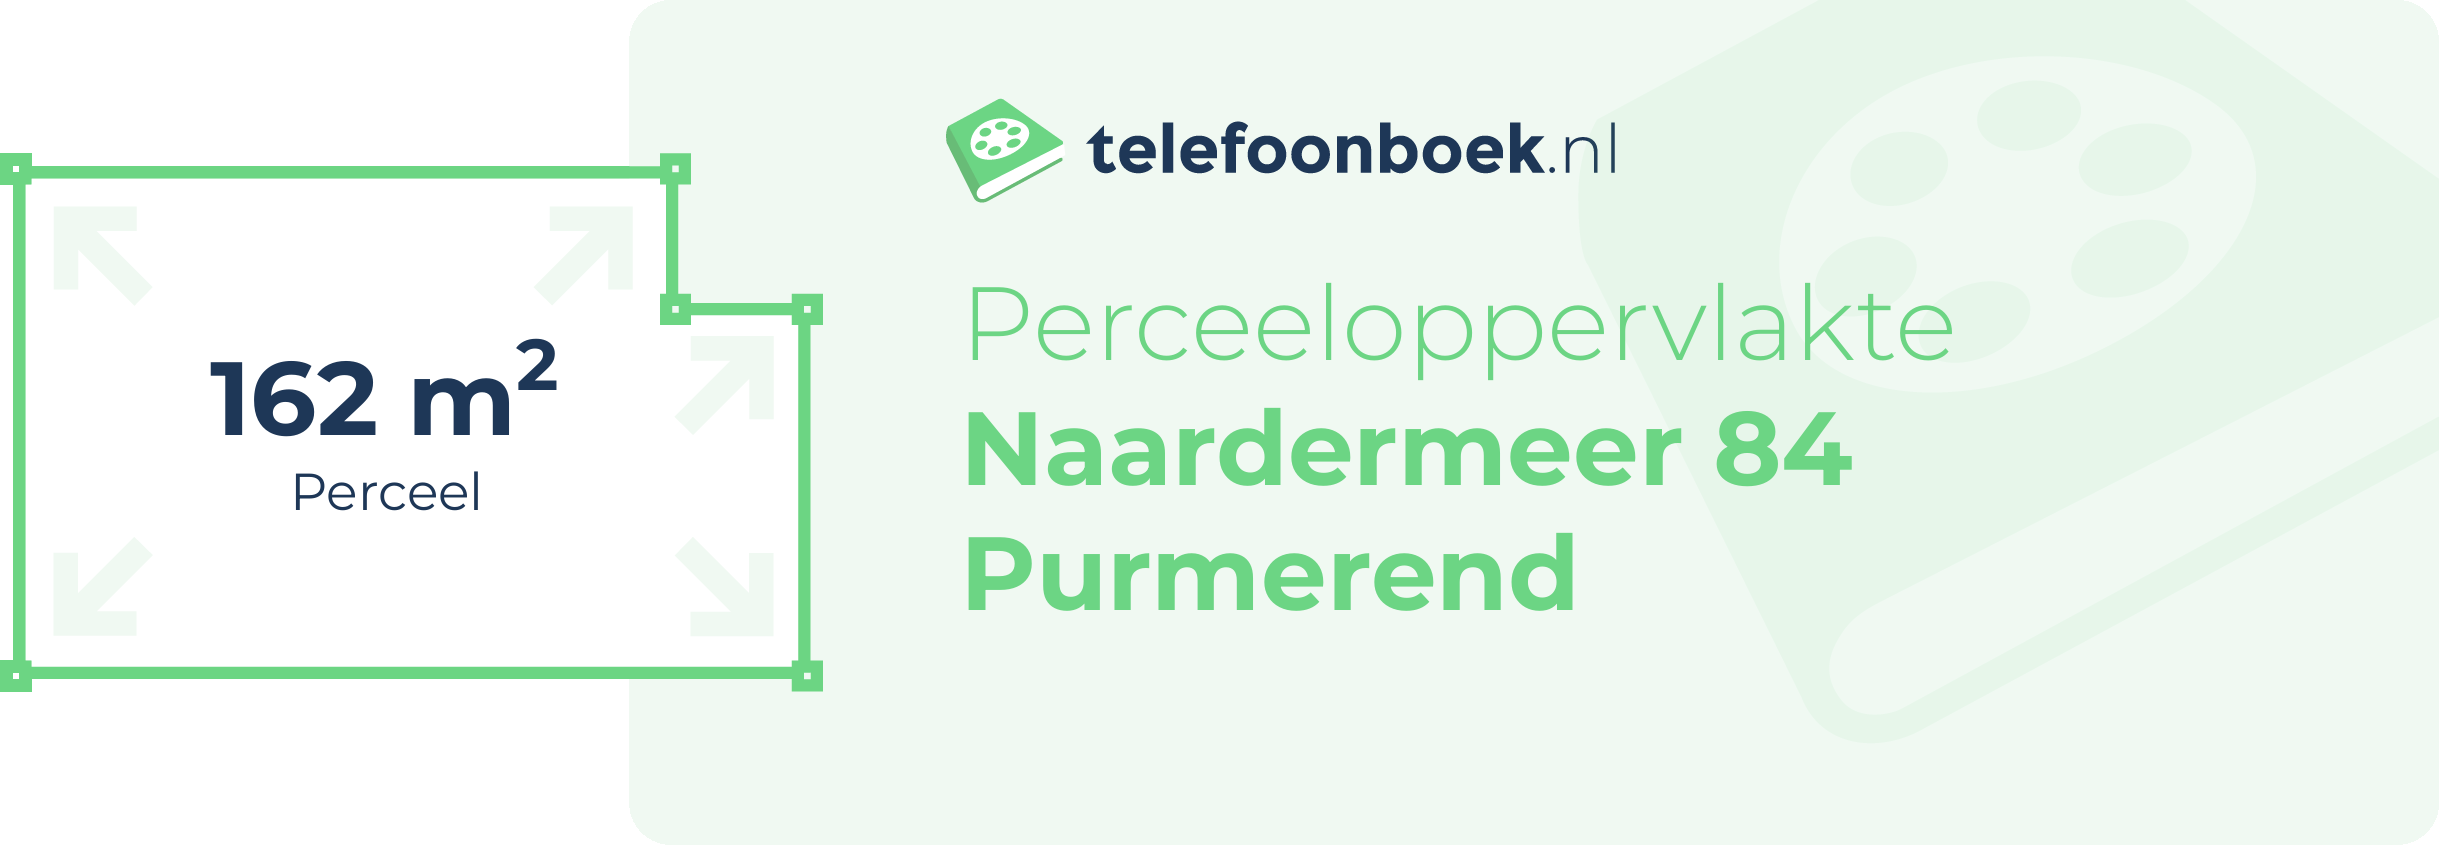 Perceeloppervlakte Naardermeer 84 Purmerend